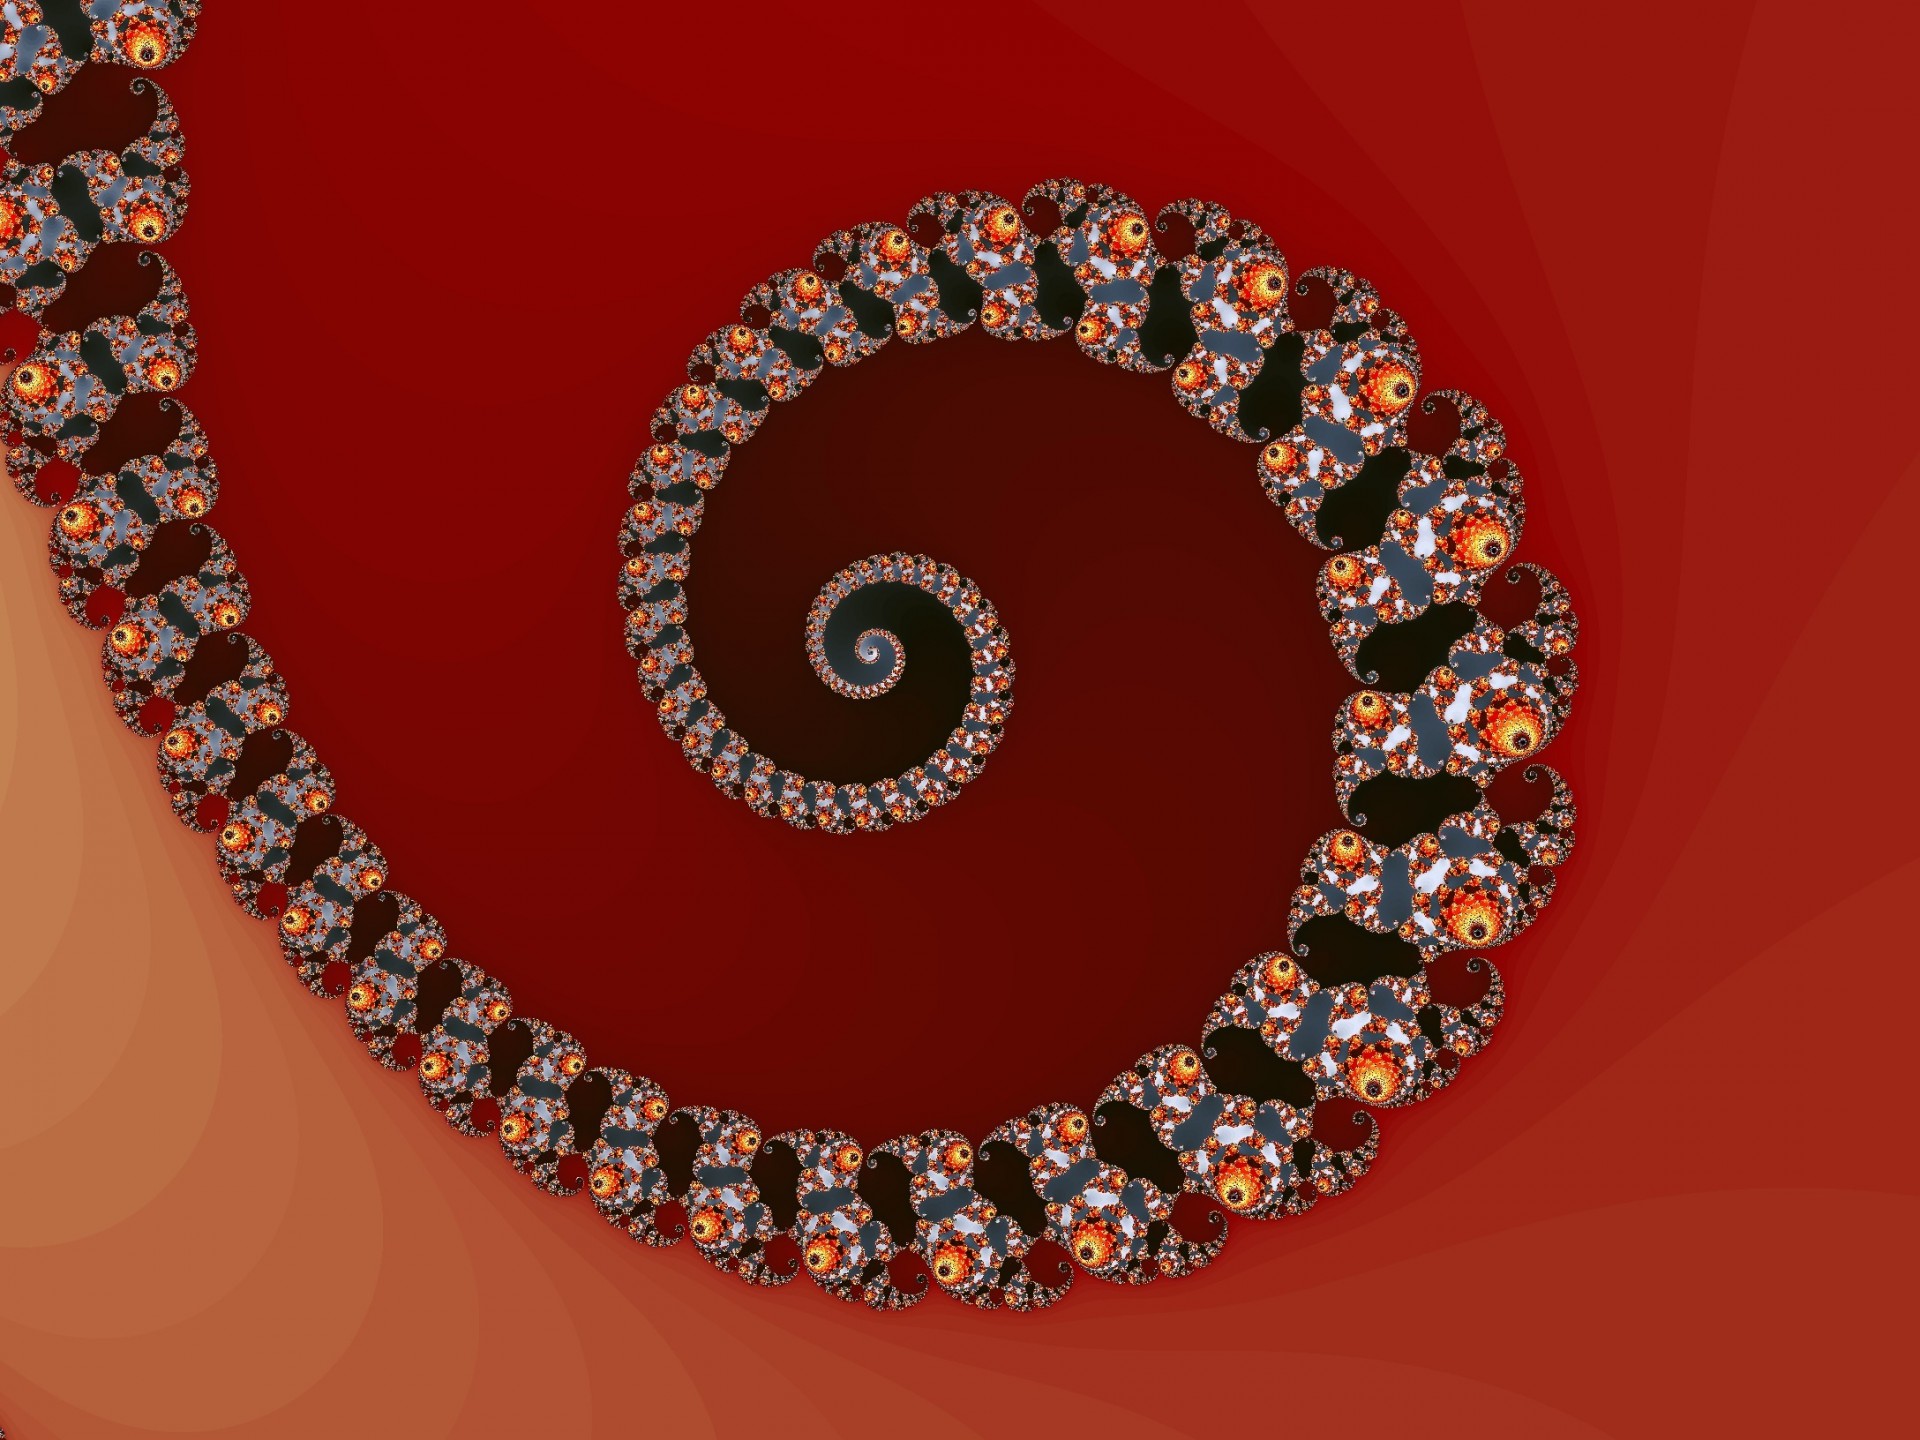 Fractal Spiral